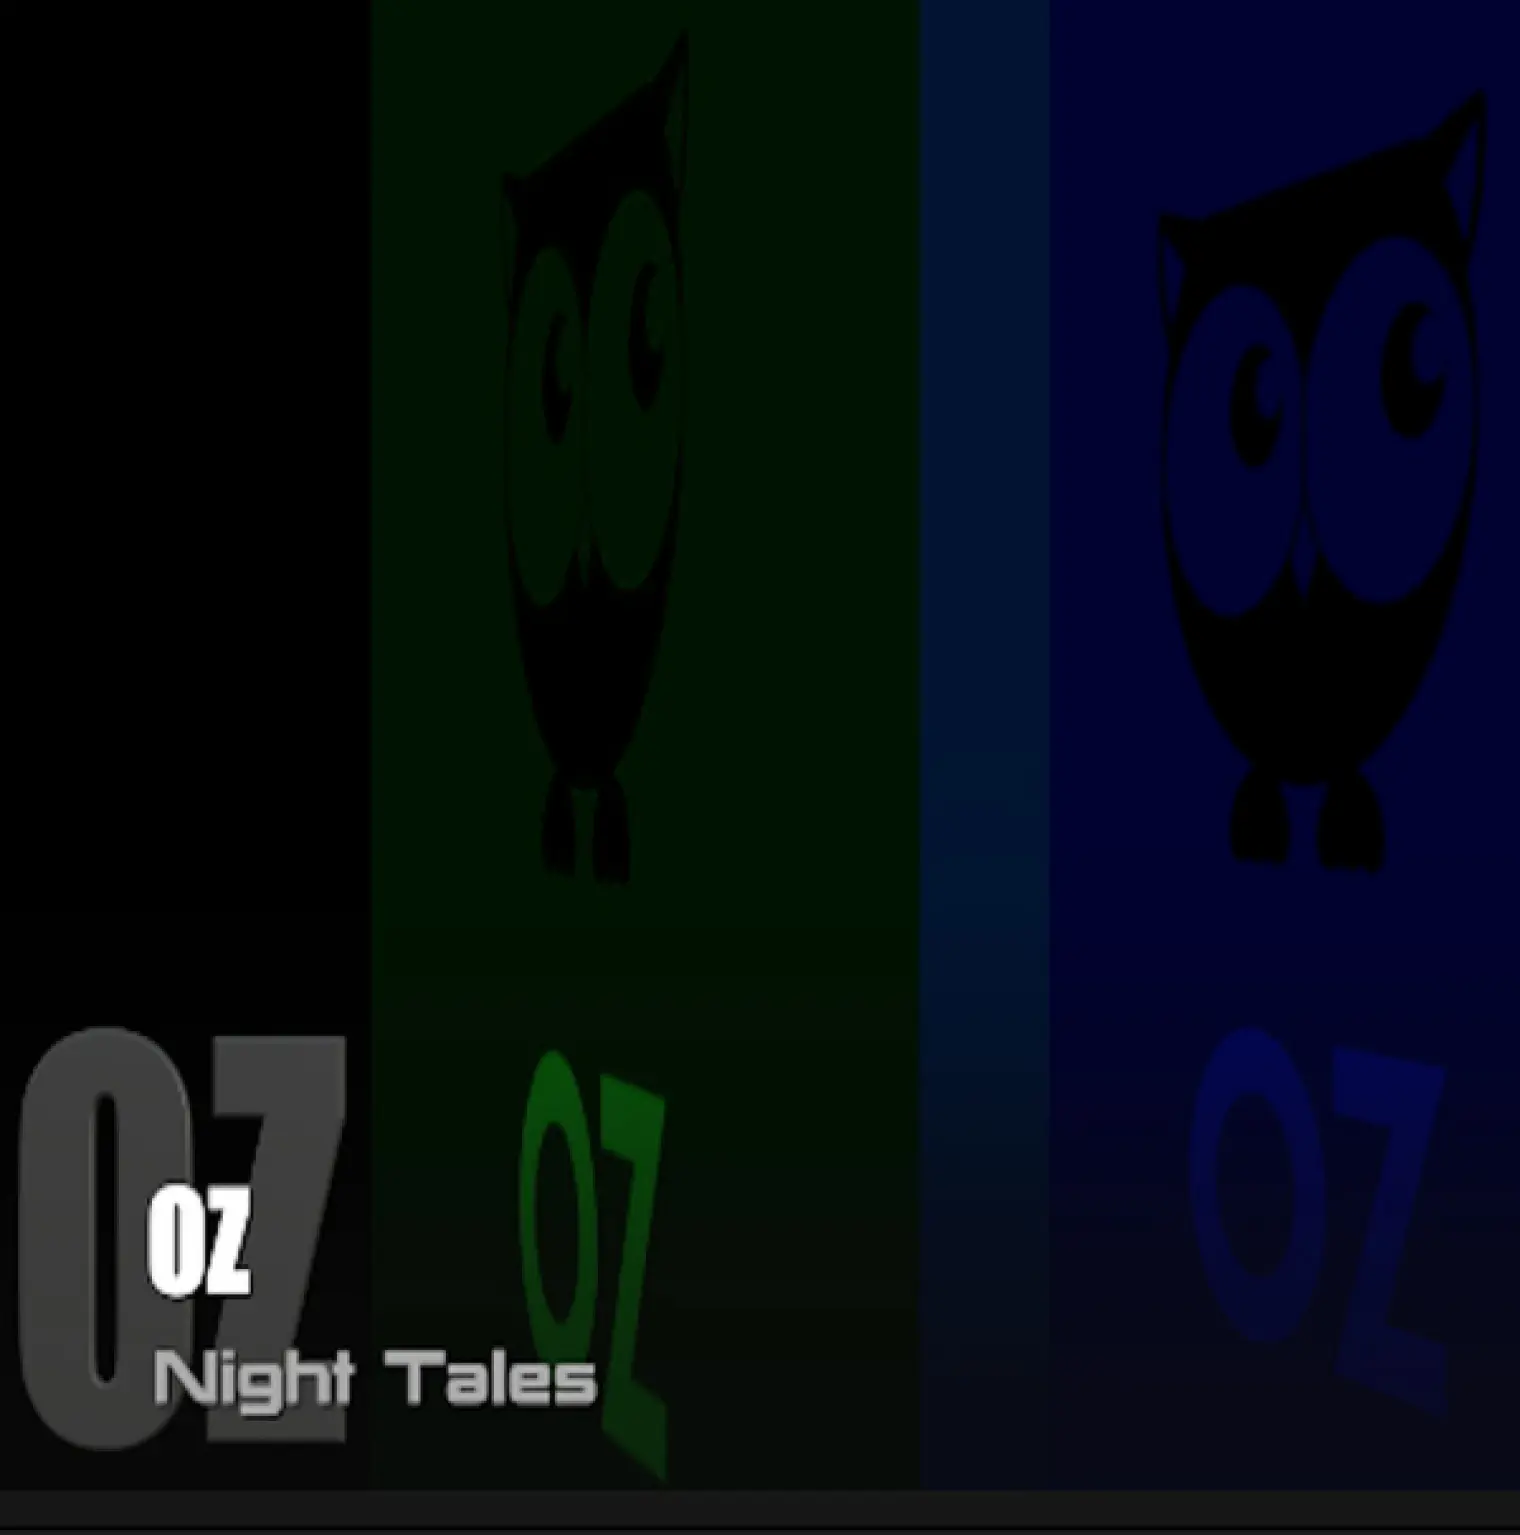 Night Tales -  Oz 